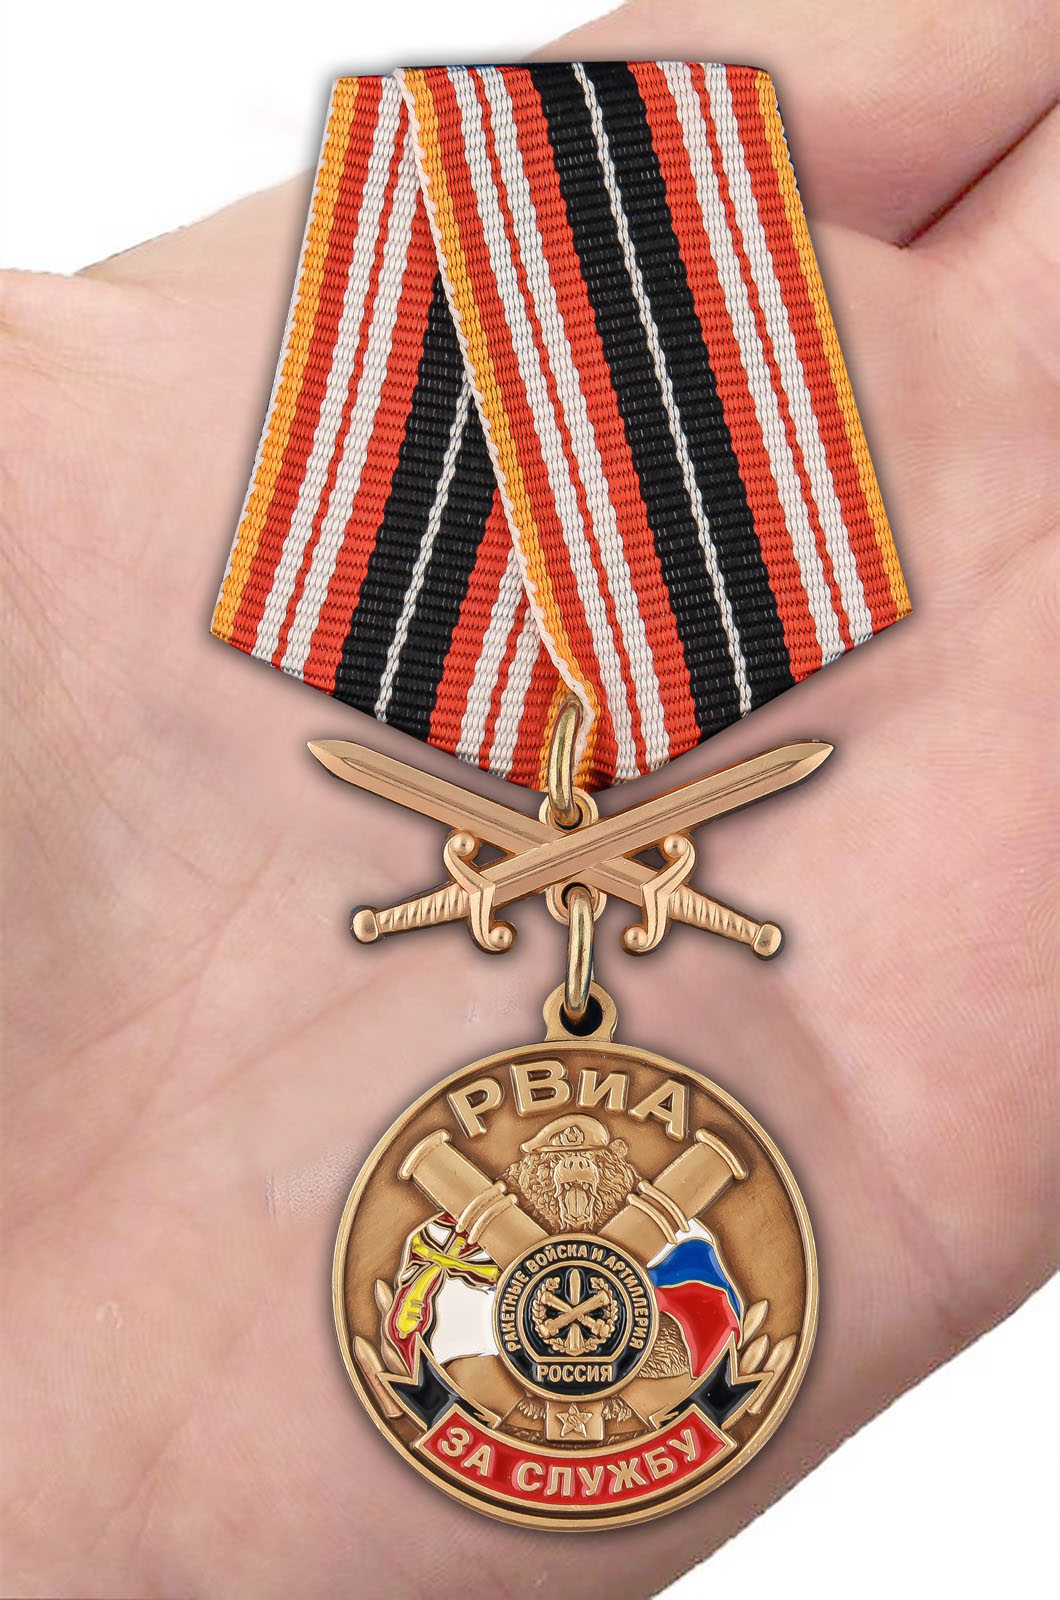 Заказать медаль "За службу в РВиА"